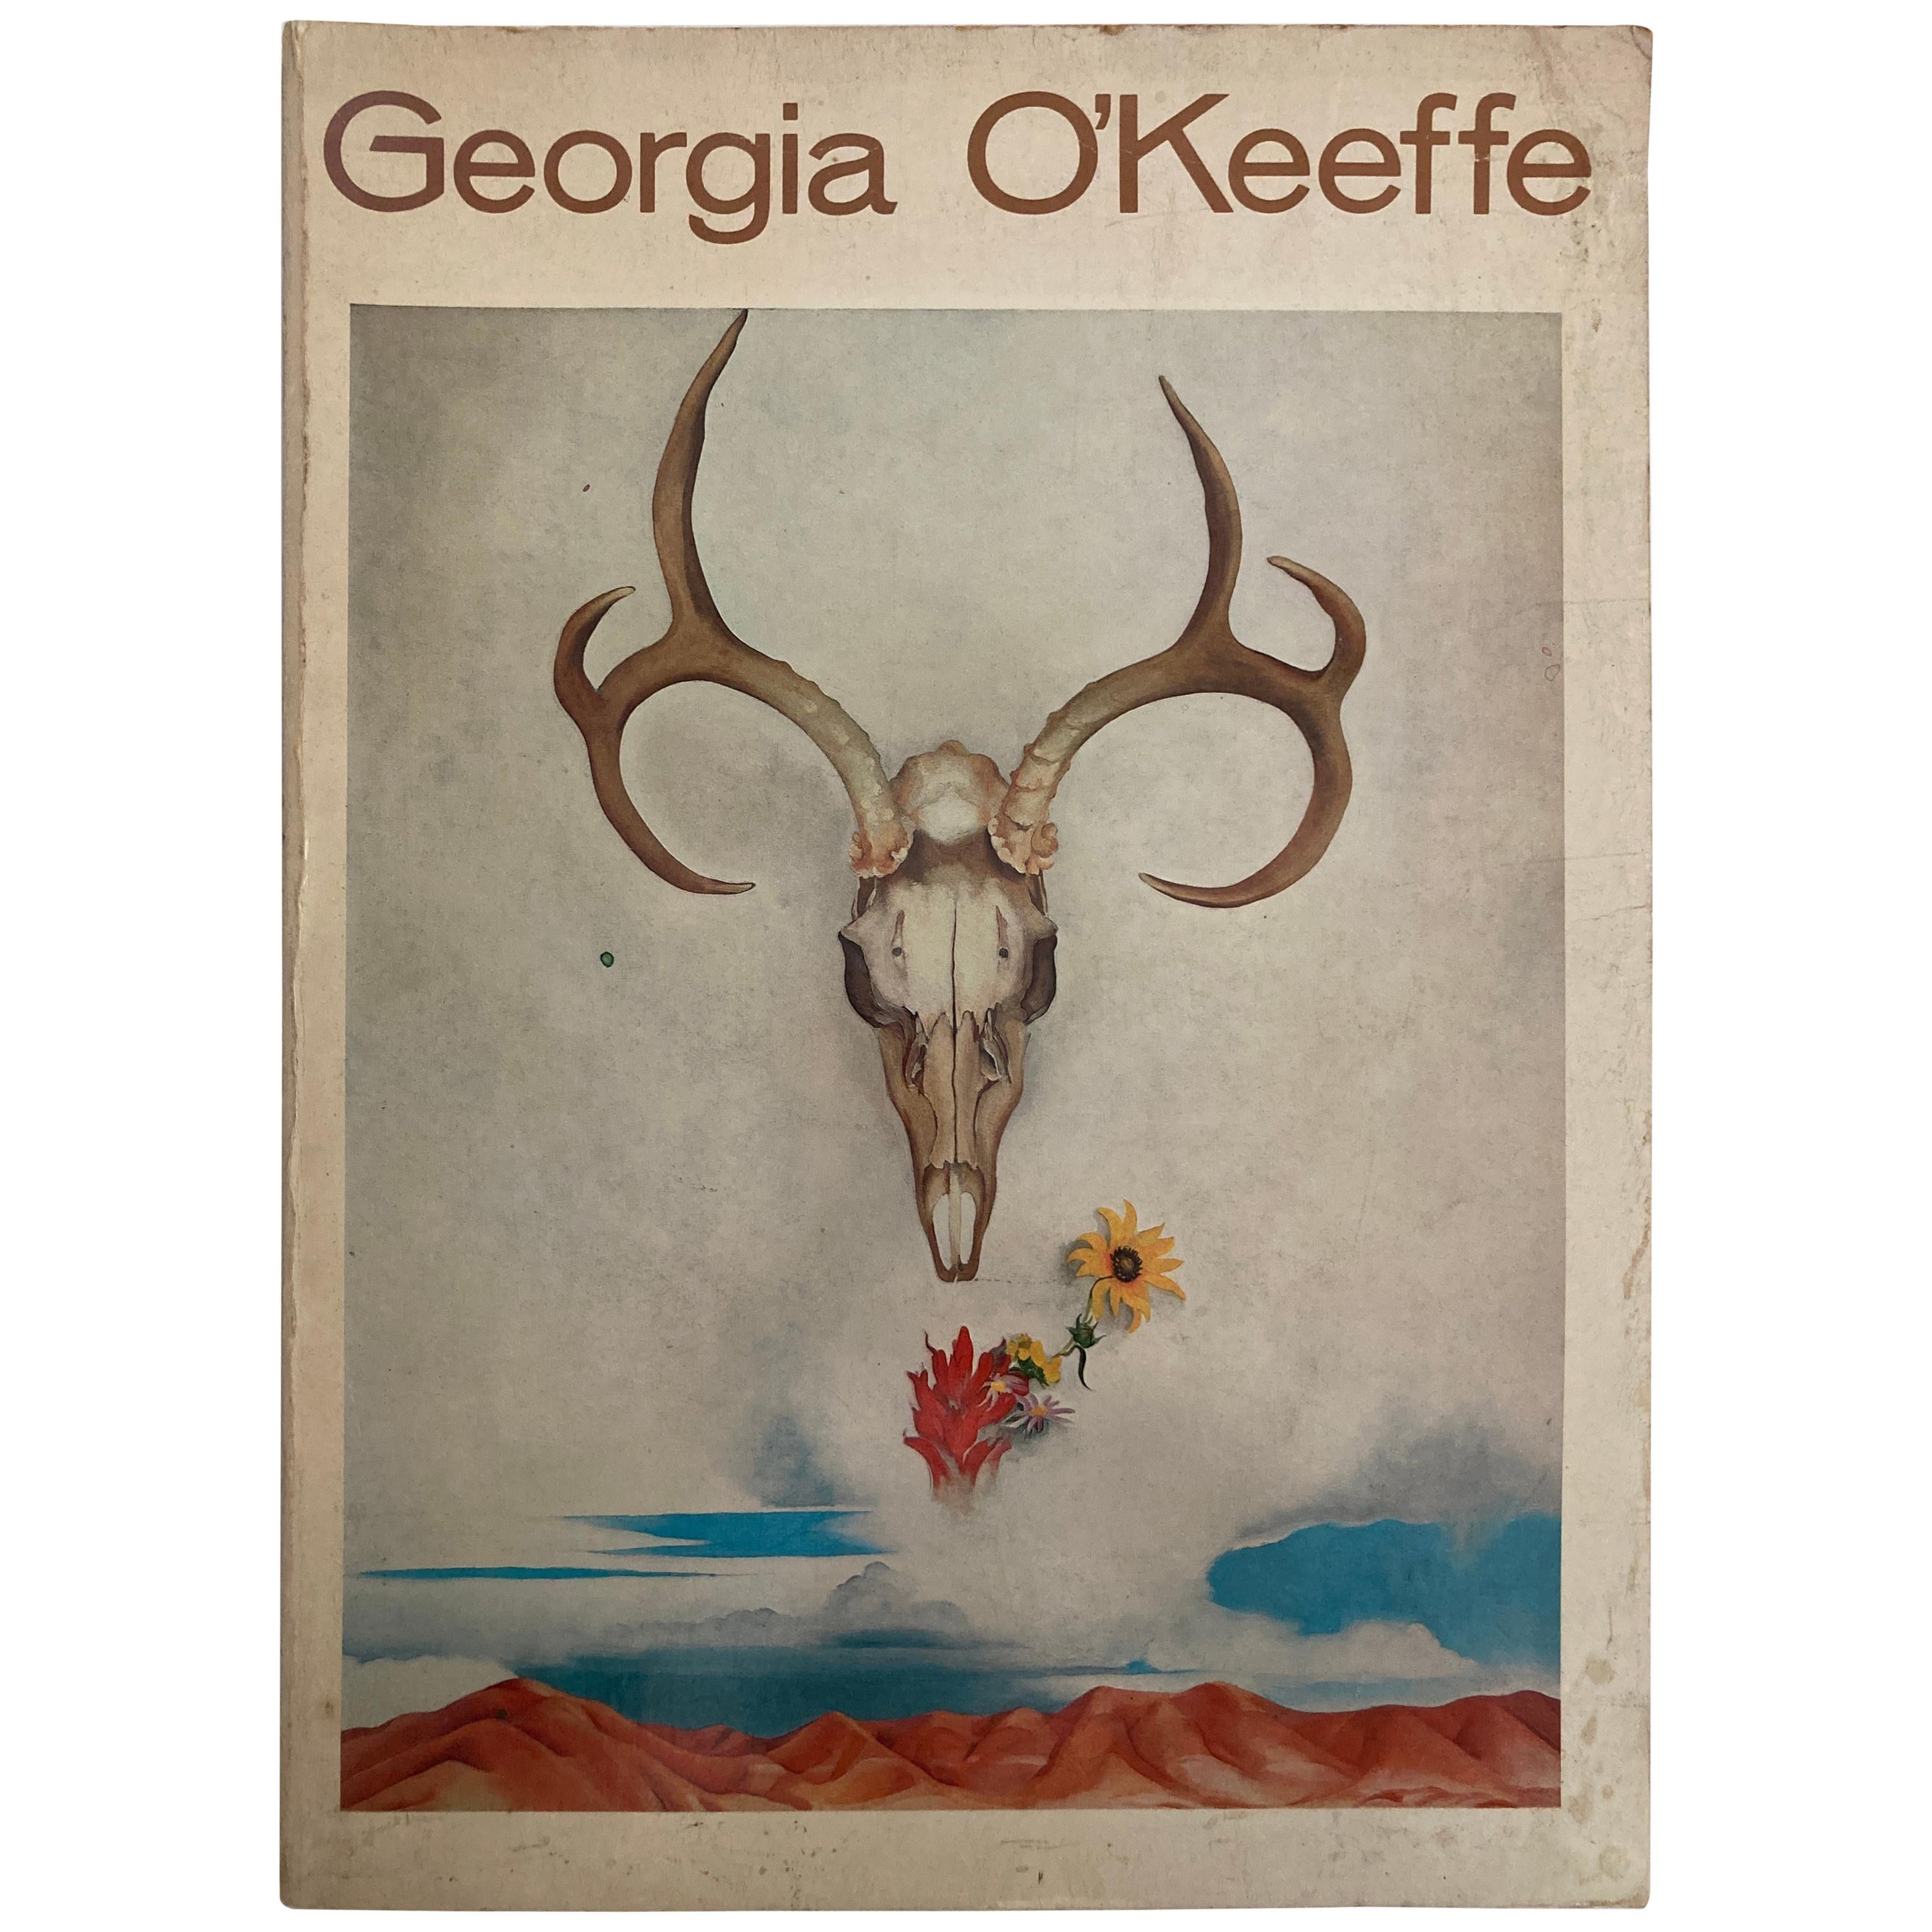 Georgia O'Keeffe Coffee Table Book